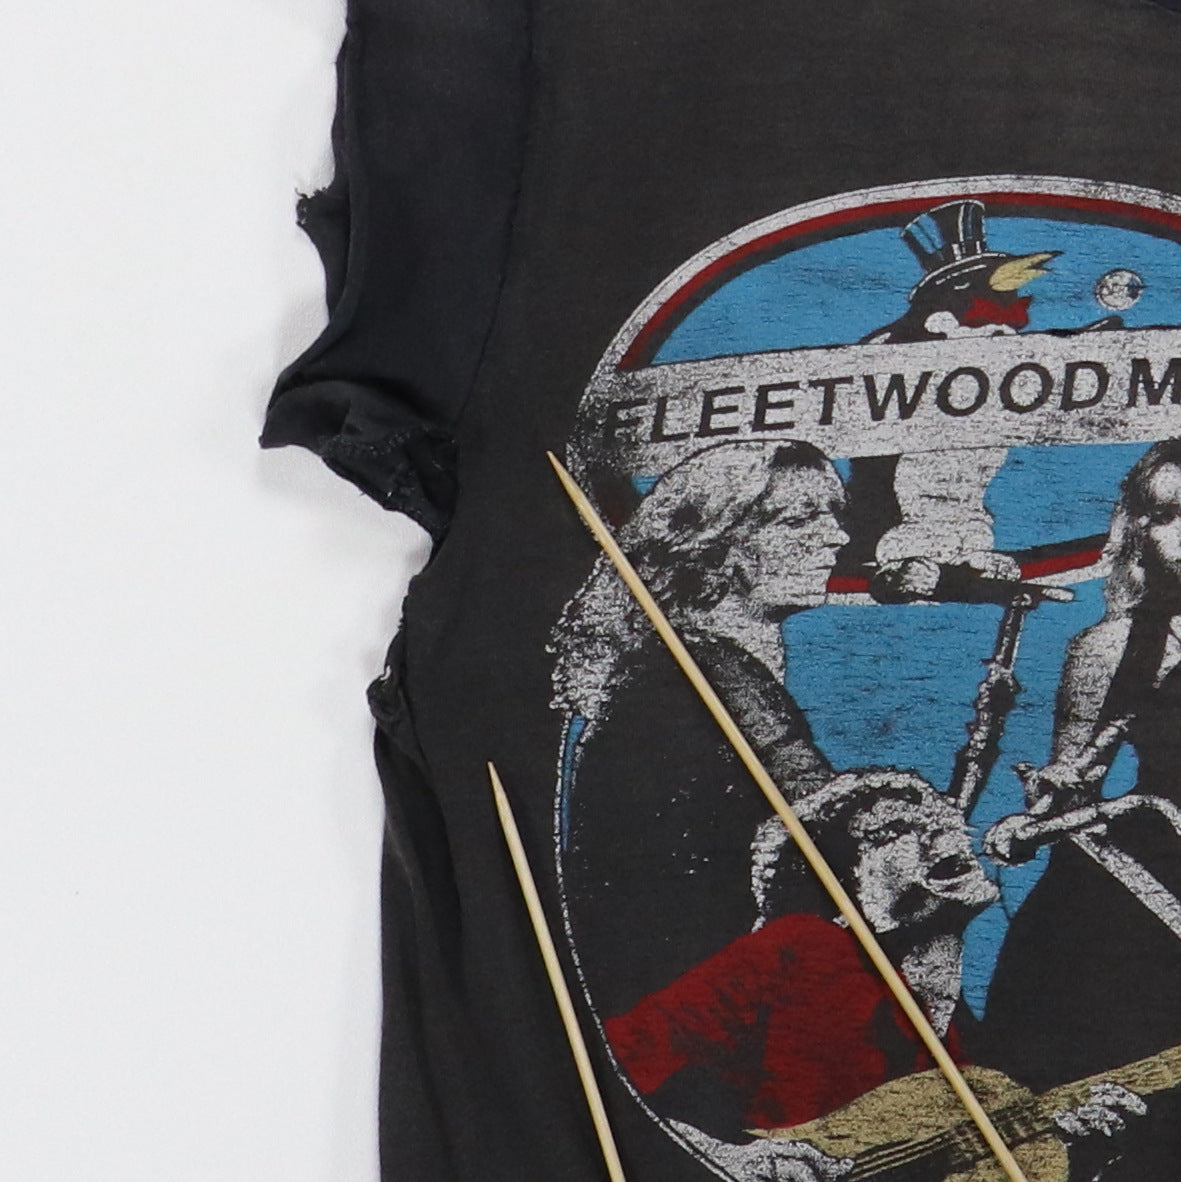 1979 Fleetwood Mac Tusk Tour Shirt